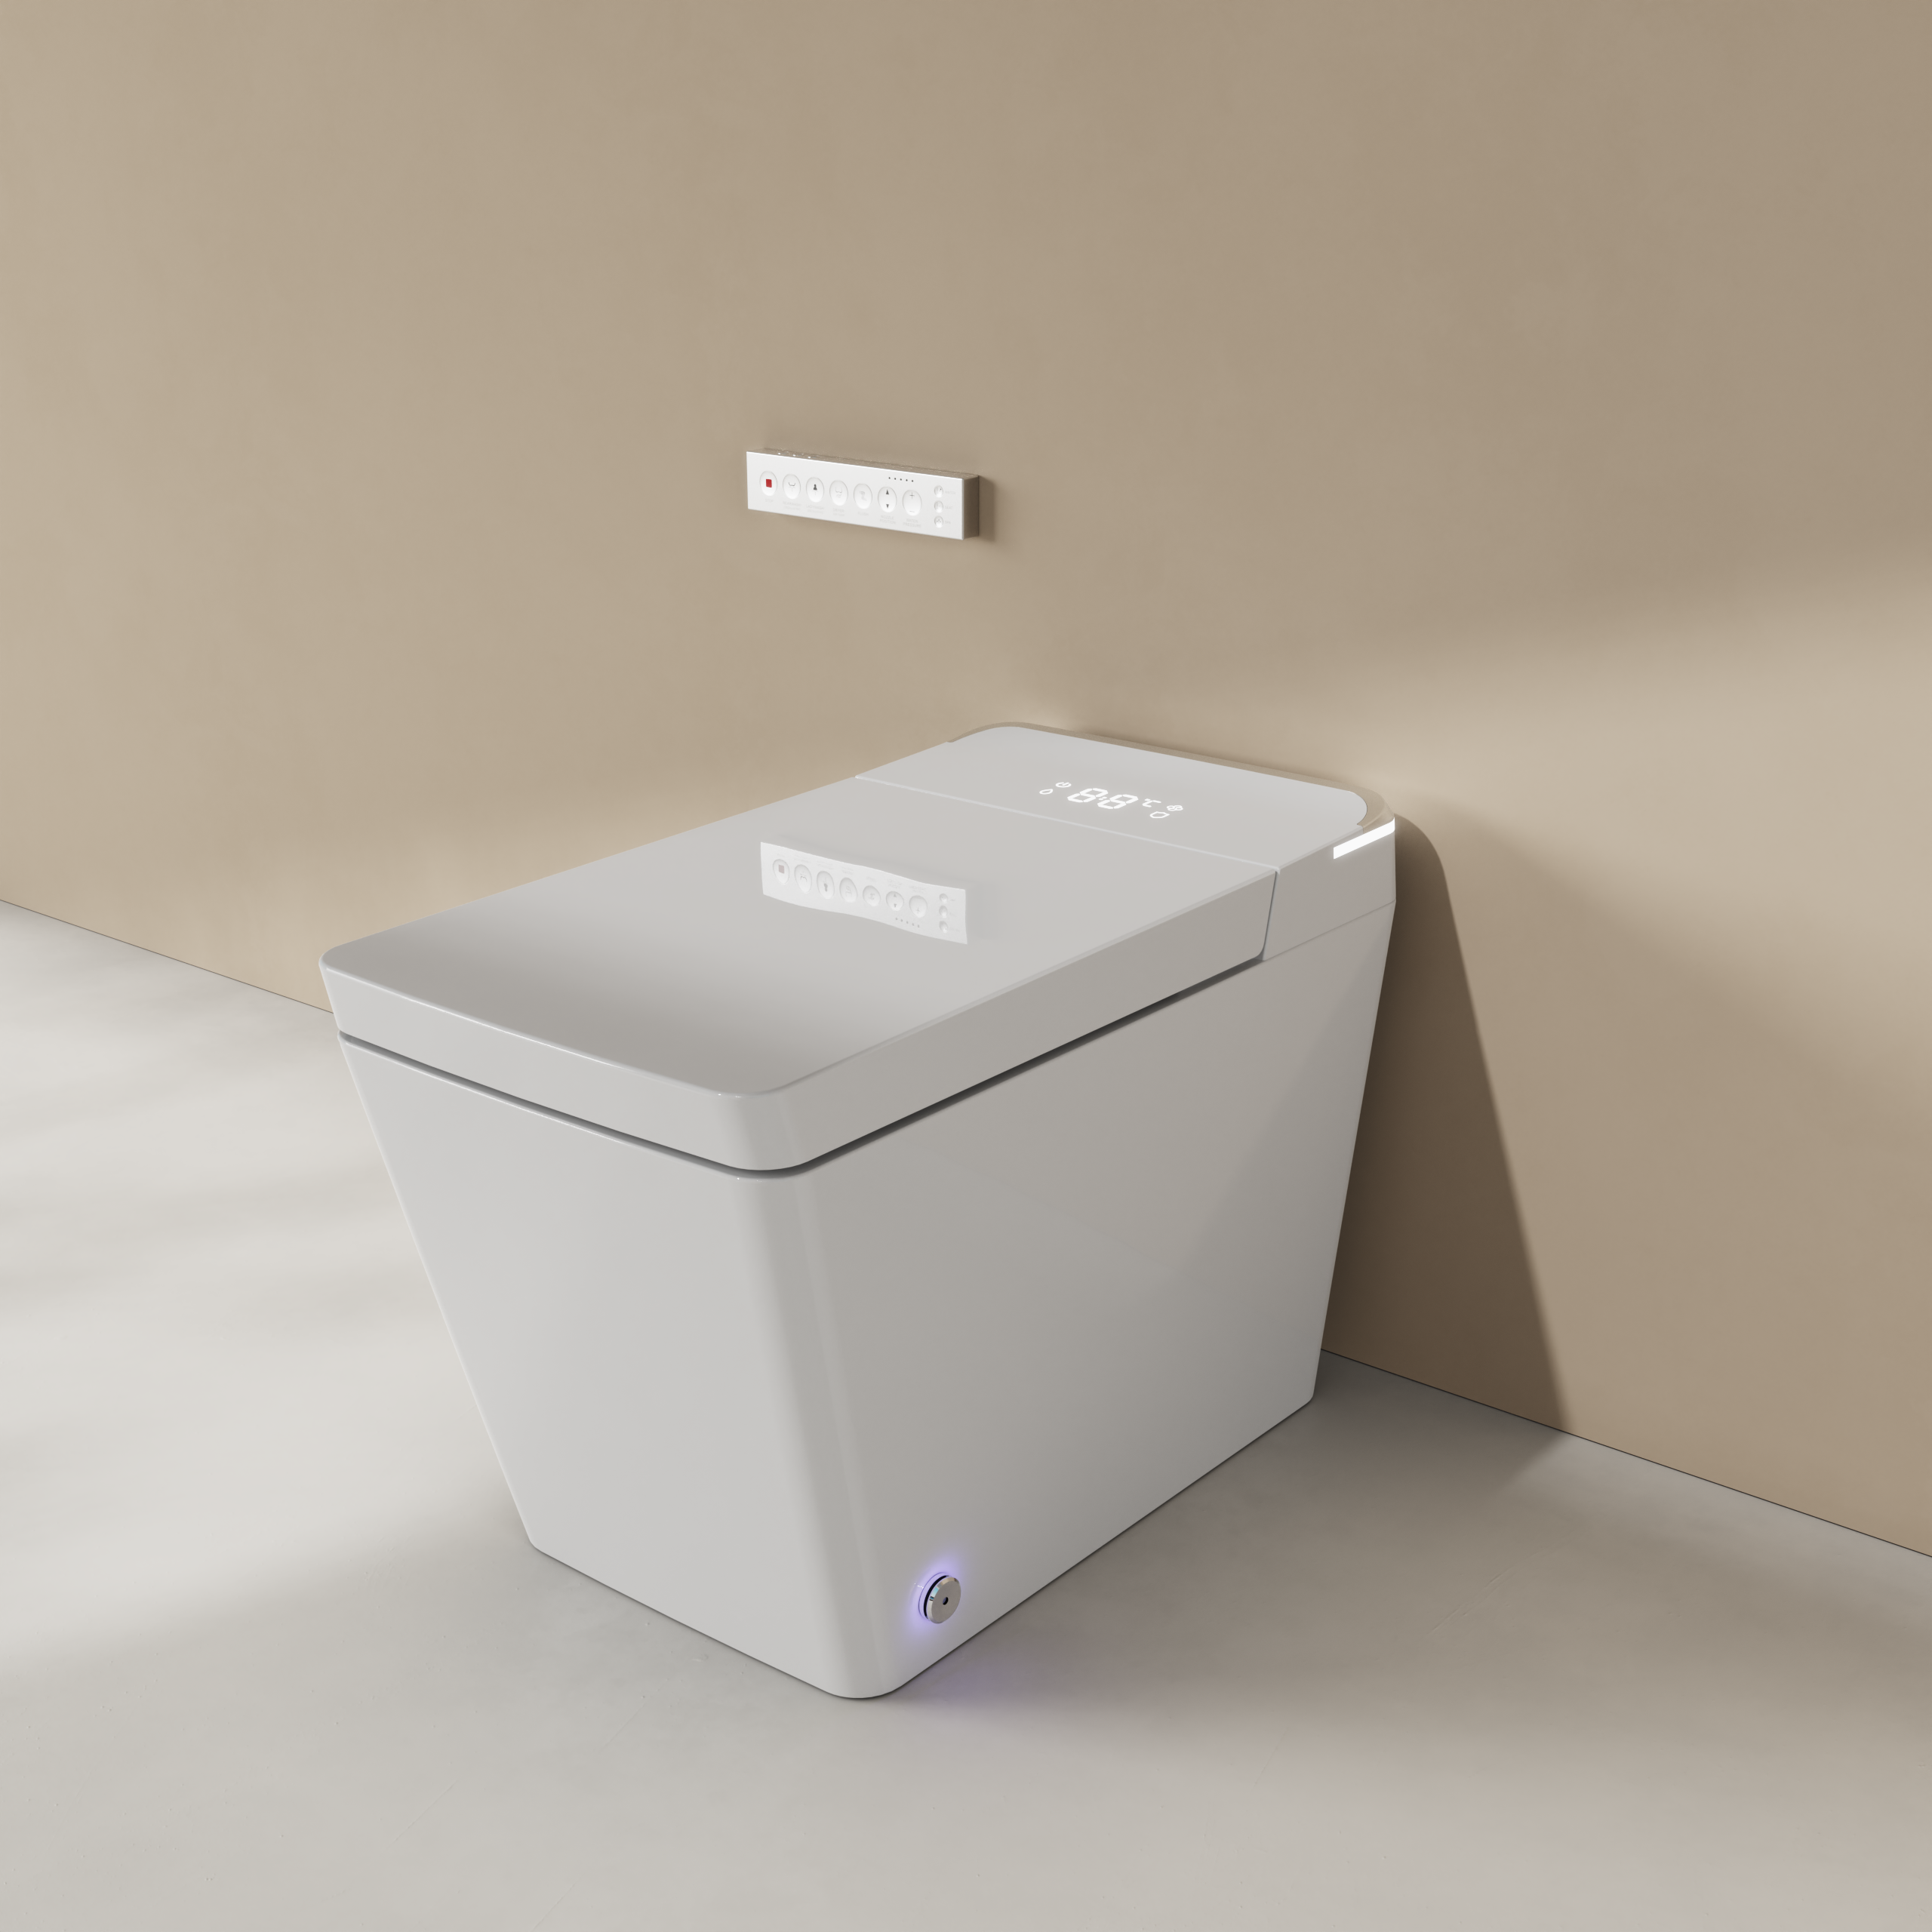 Rectangular Smart Toilet Bidet, Auto Open/Flushing, Remote, Round Seat in White